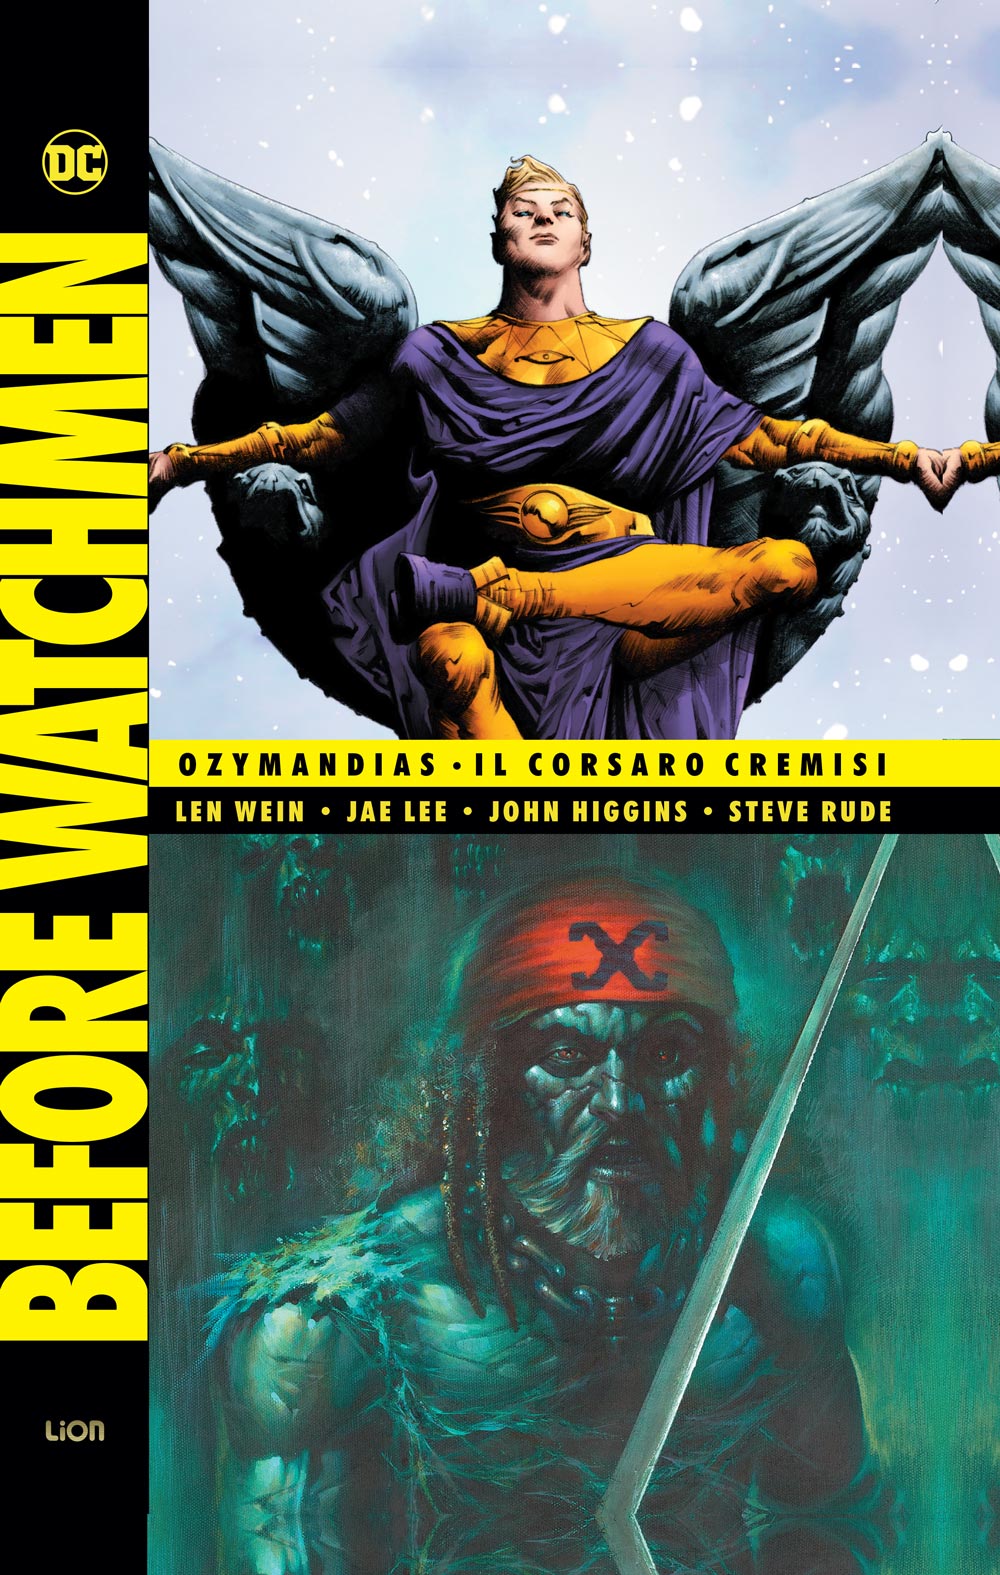 Libri Before Watchmen Vol 04 - Ozymandias / Il Corsaro Cremisi NUOVO SIGILLATO, EDIZIONE DEL 30/11/2019 SUBITO DISPONIBILE